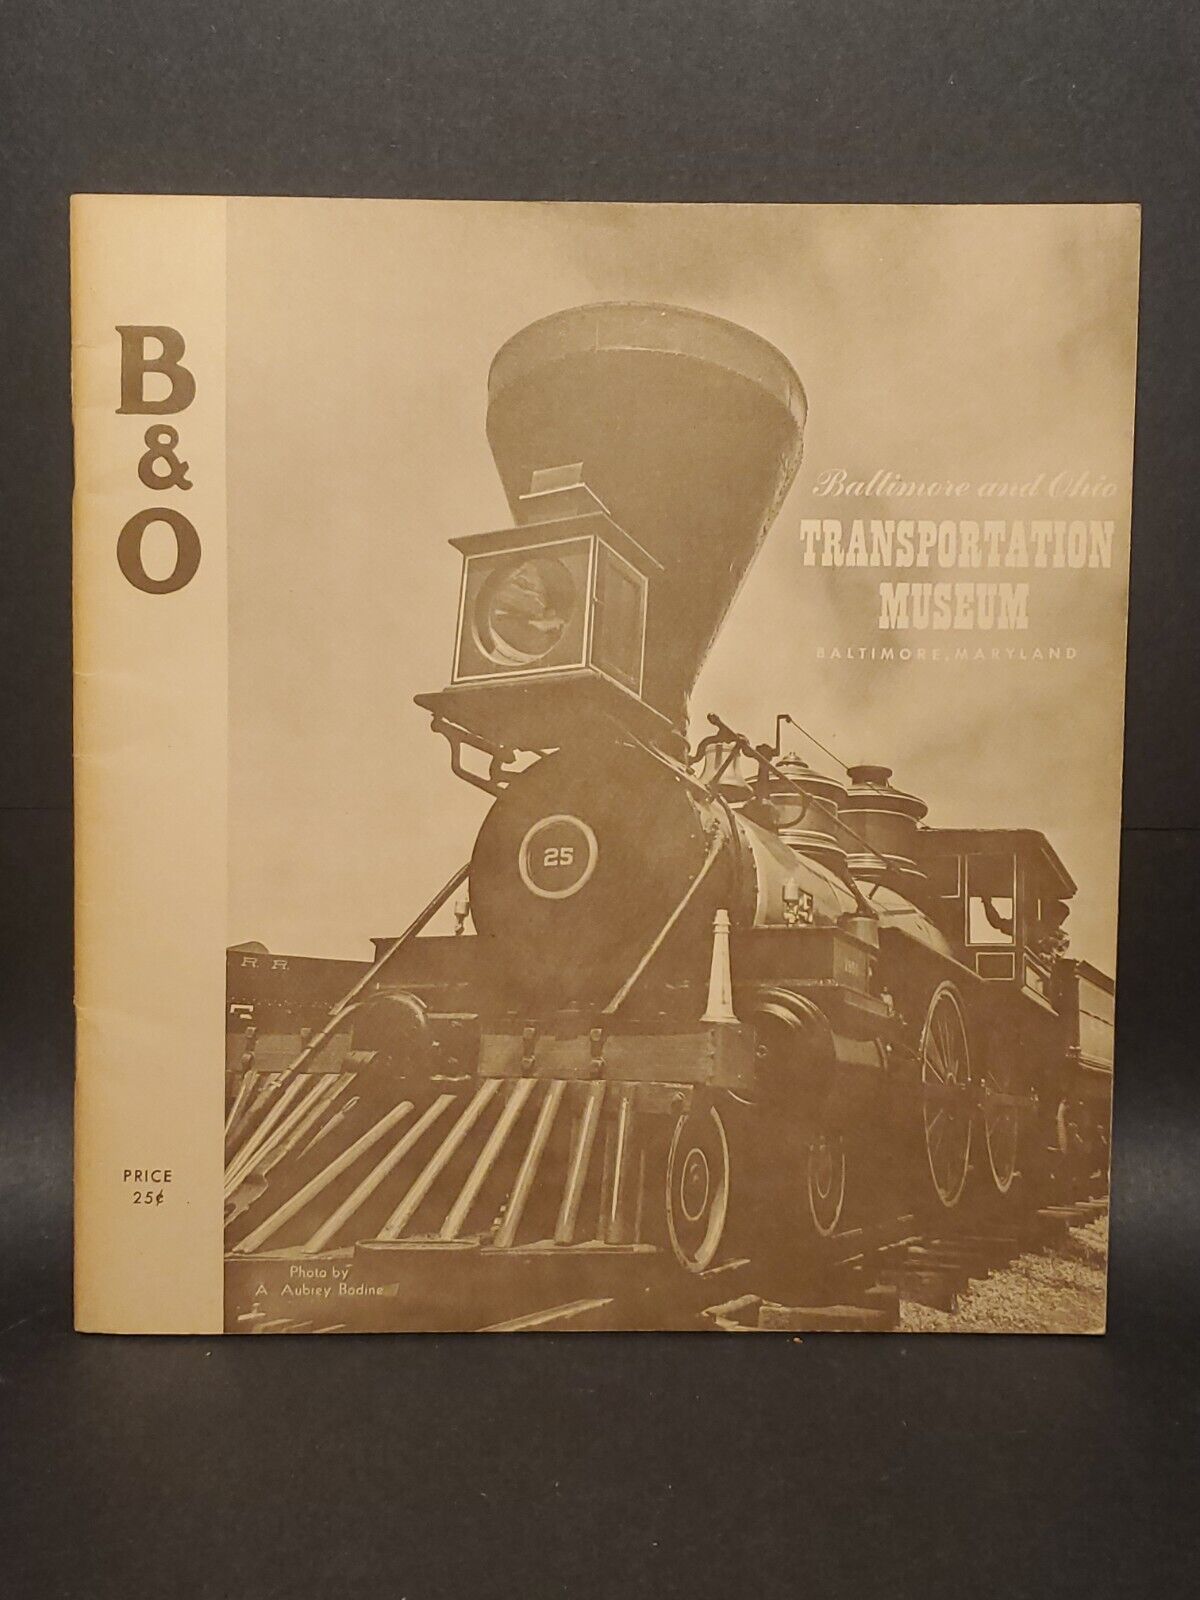  1960\'s BALTIMORE & OHIO GO B&O TRANSPORTATION MUSEUM BOOKLET